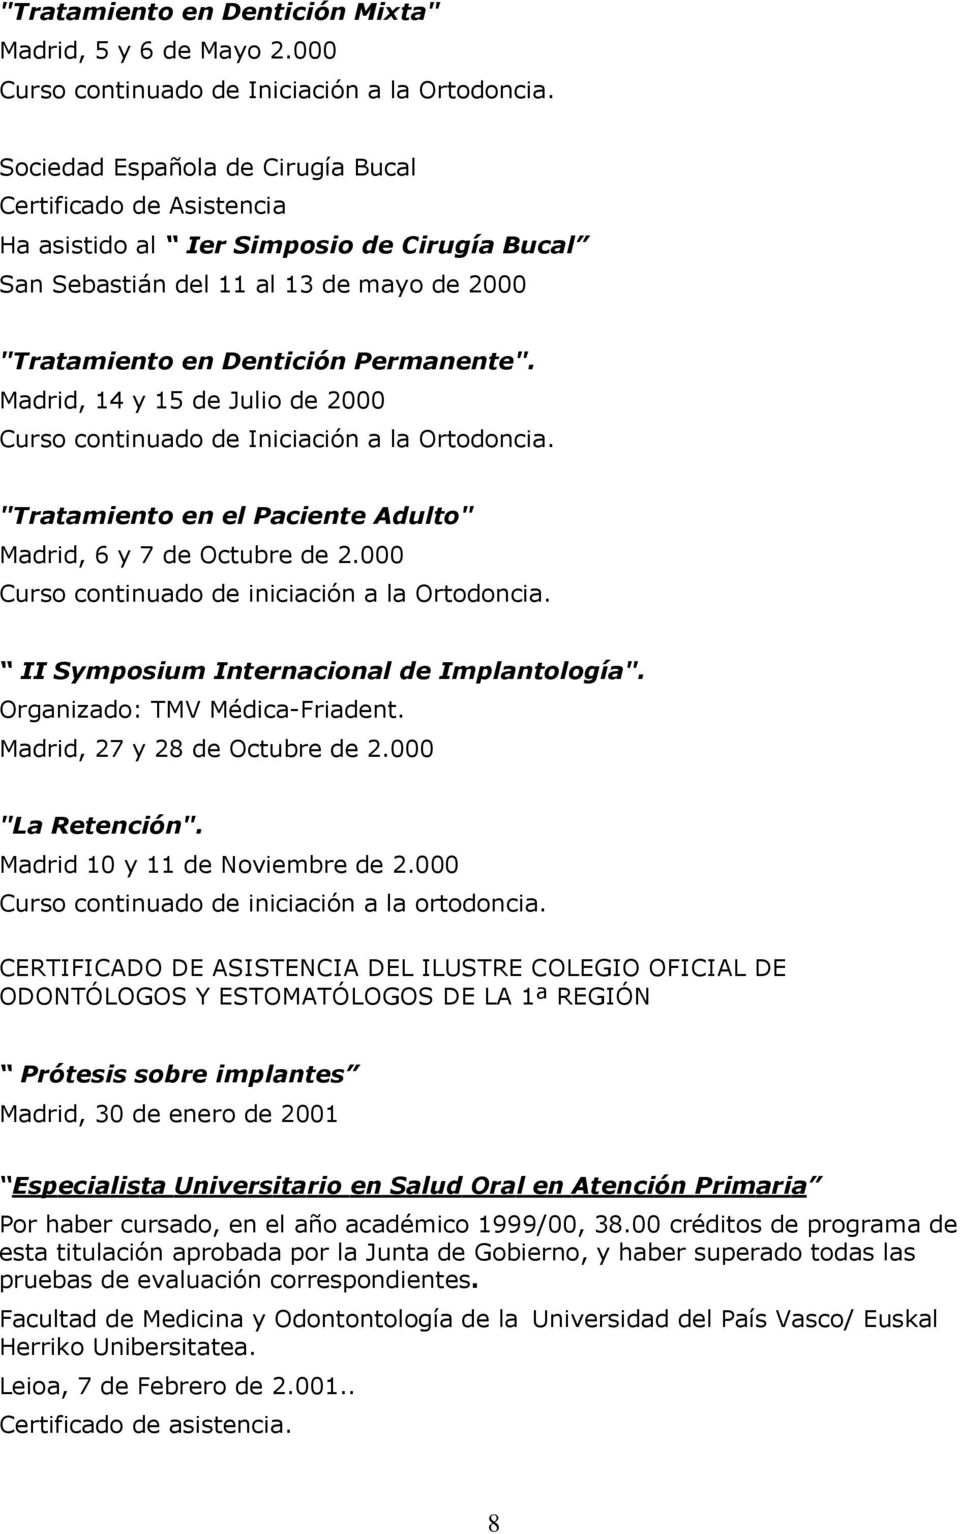 Madrid, 14 y 15 de Julio de 2000 Curso continuado de Iniciación a la Ortodoncia. "Tratamiento en el Paciente Adulto" Madrid, 6 y 7 de Octubre de 2.000 Curso continuado de iniciación a la Ortodoncia.